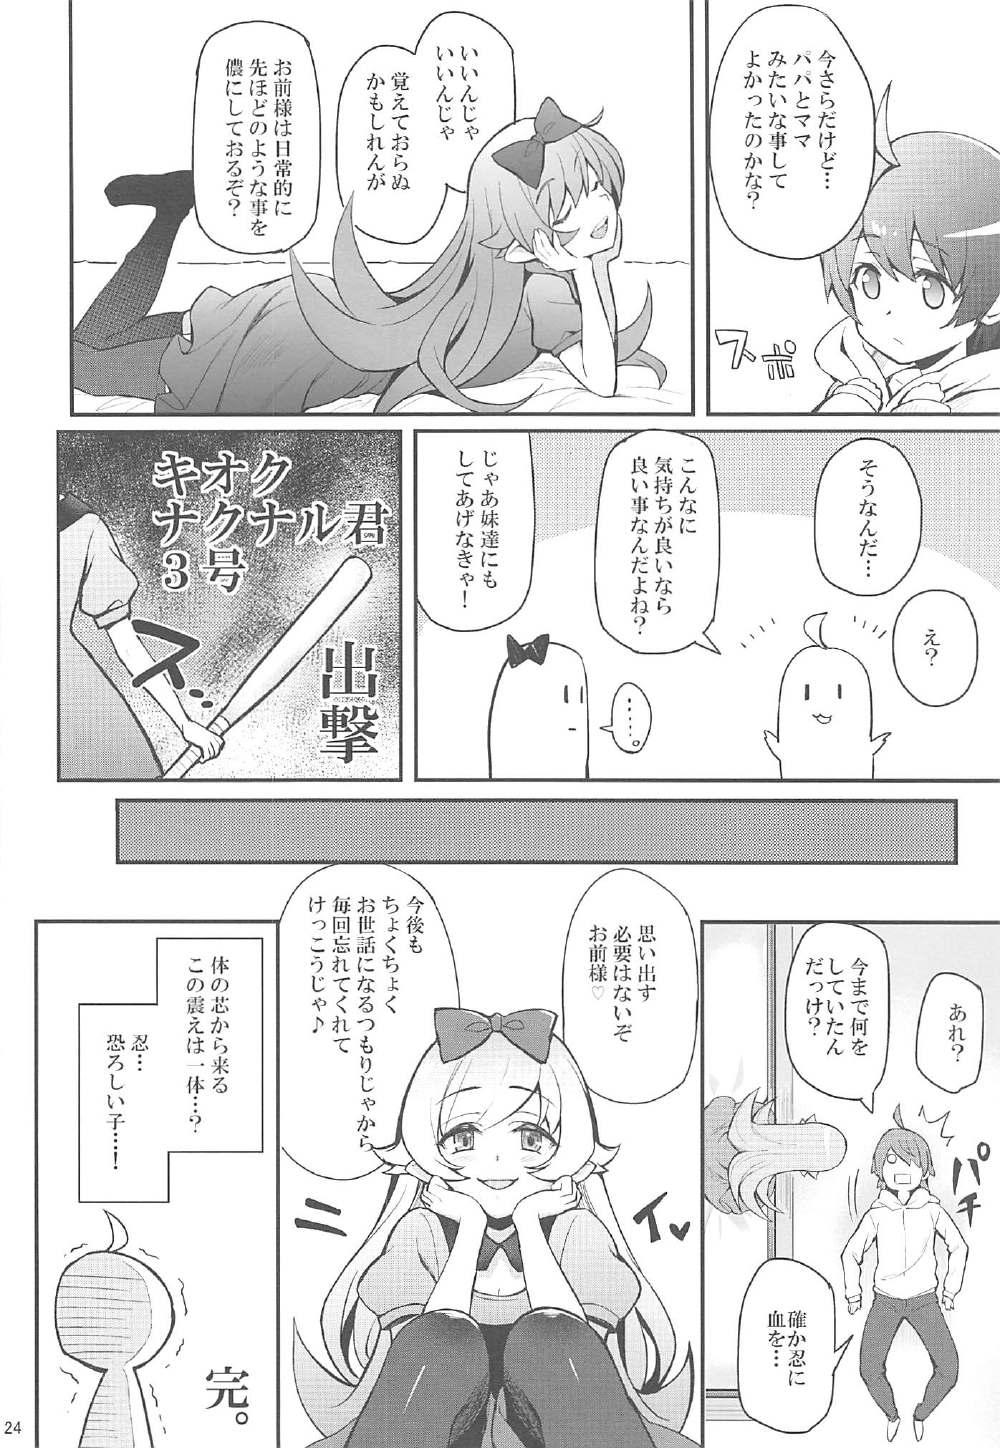 Flash Pachimonogatari Part 13: Shinobu Mistake - Bakemonogatari Euro - Page 23